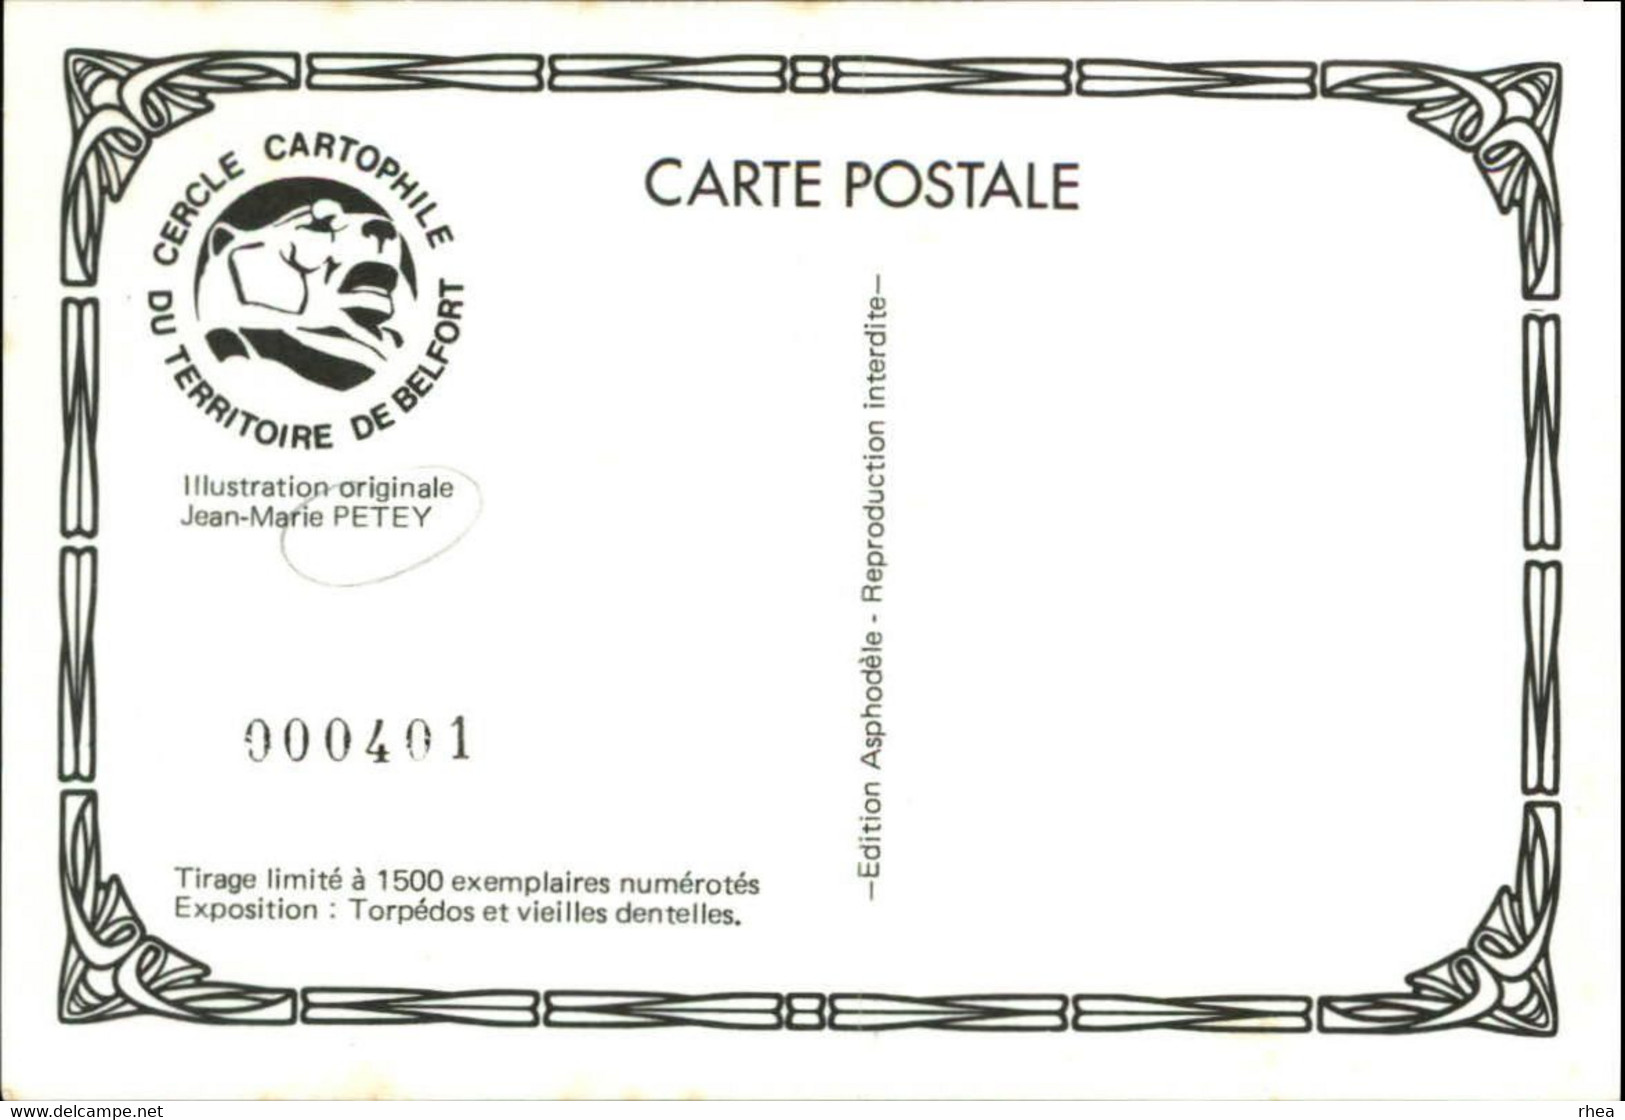 SALONS DE COLLECTIONS - Salon De Cartes Postales - 90 BELFORT - 1985 - Dessin De Petey - Bourses & Salons De Collections